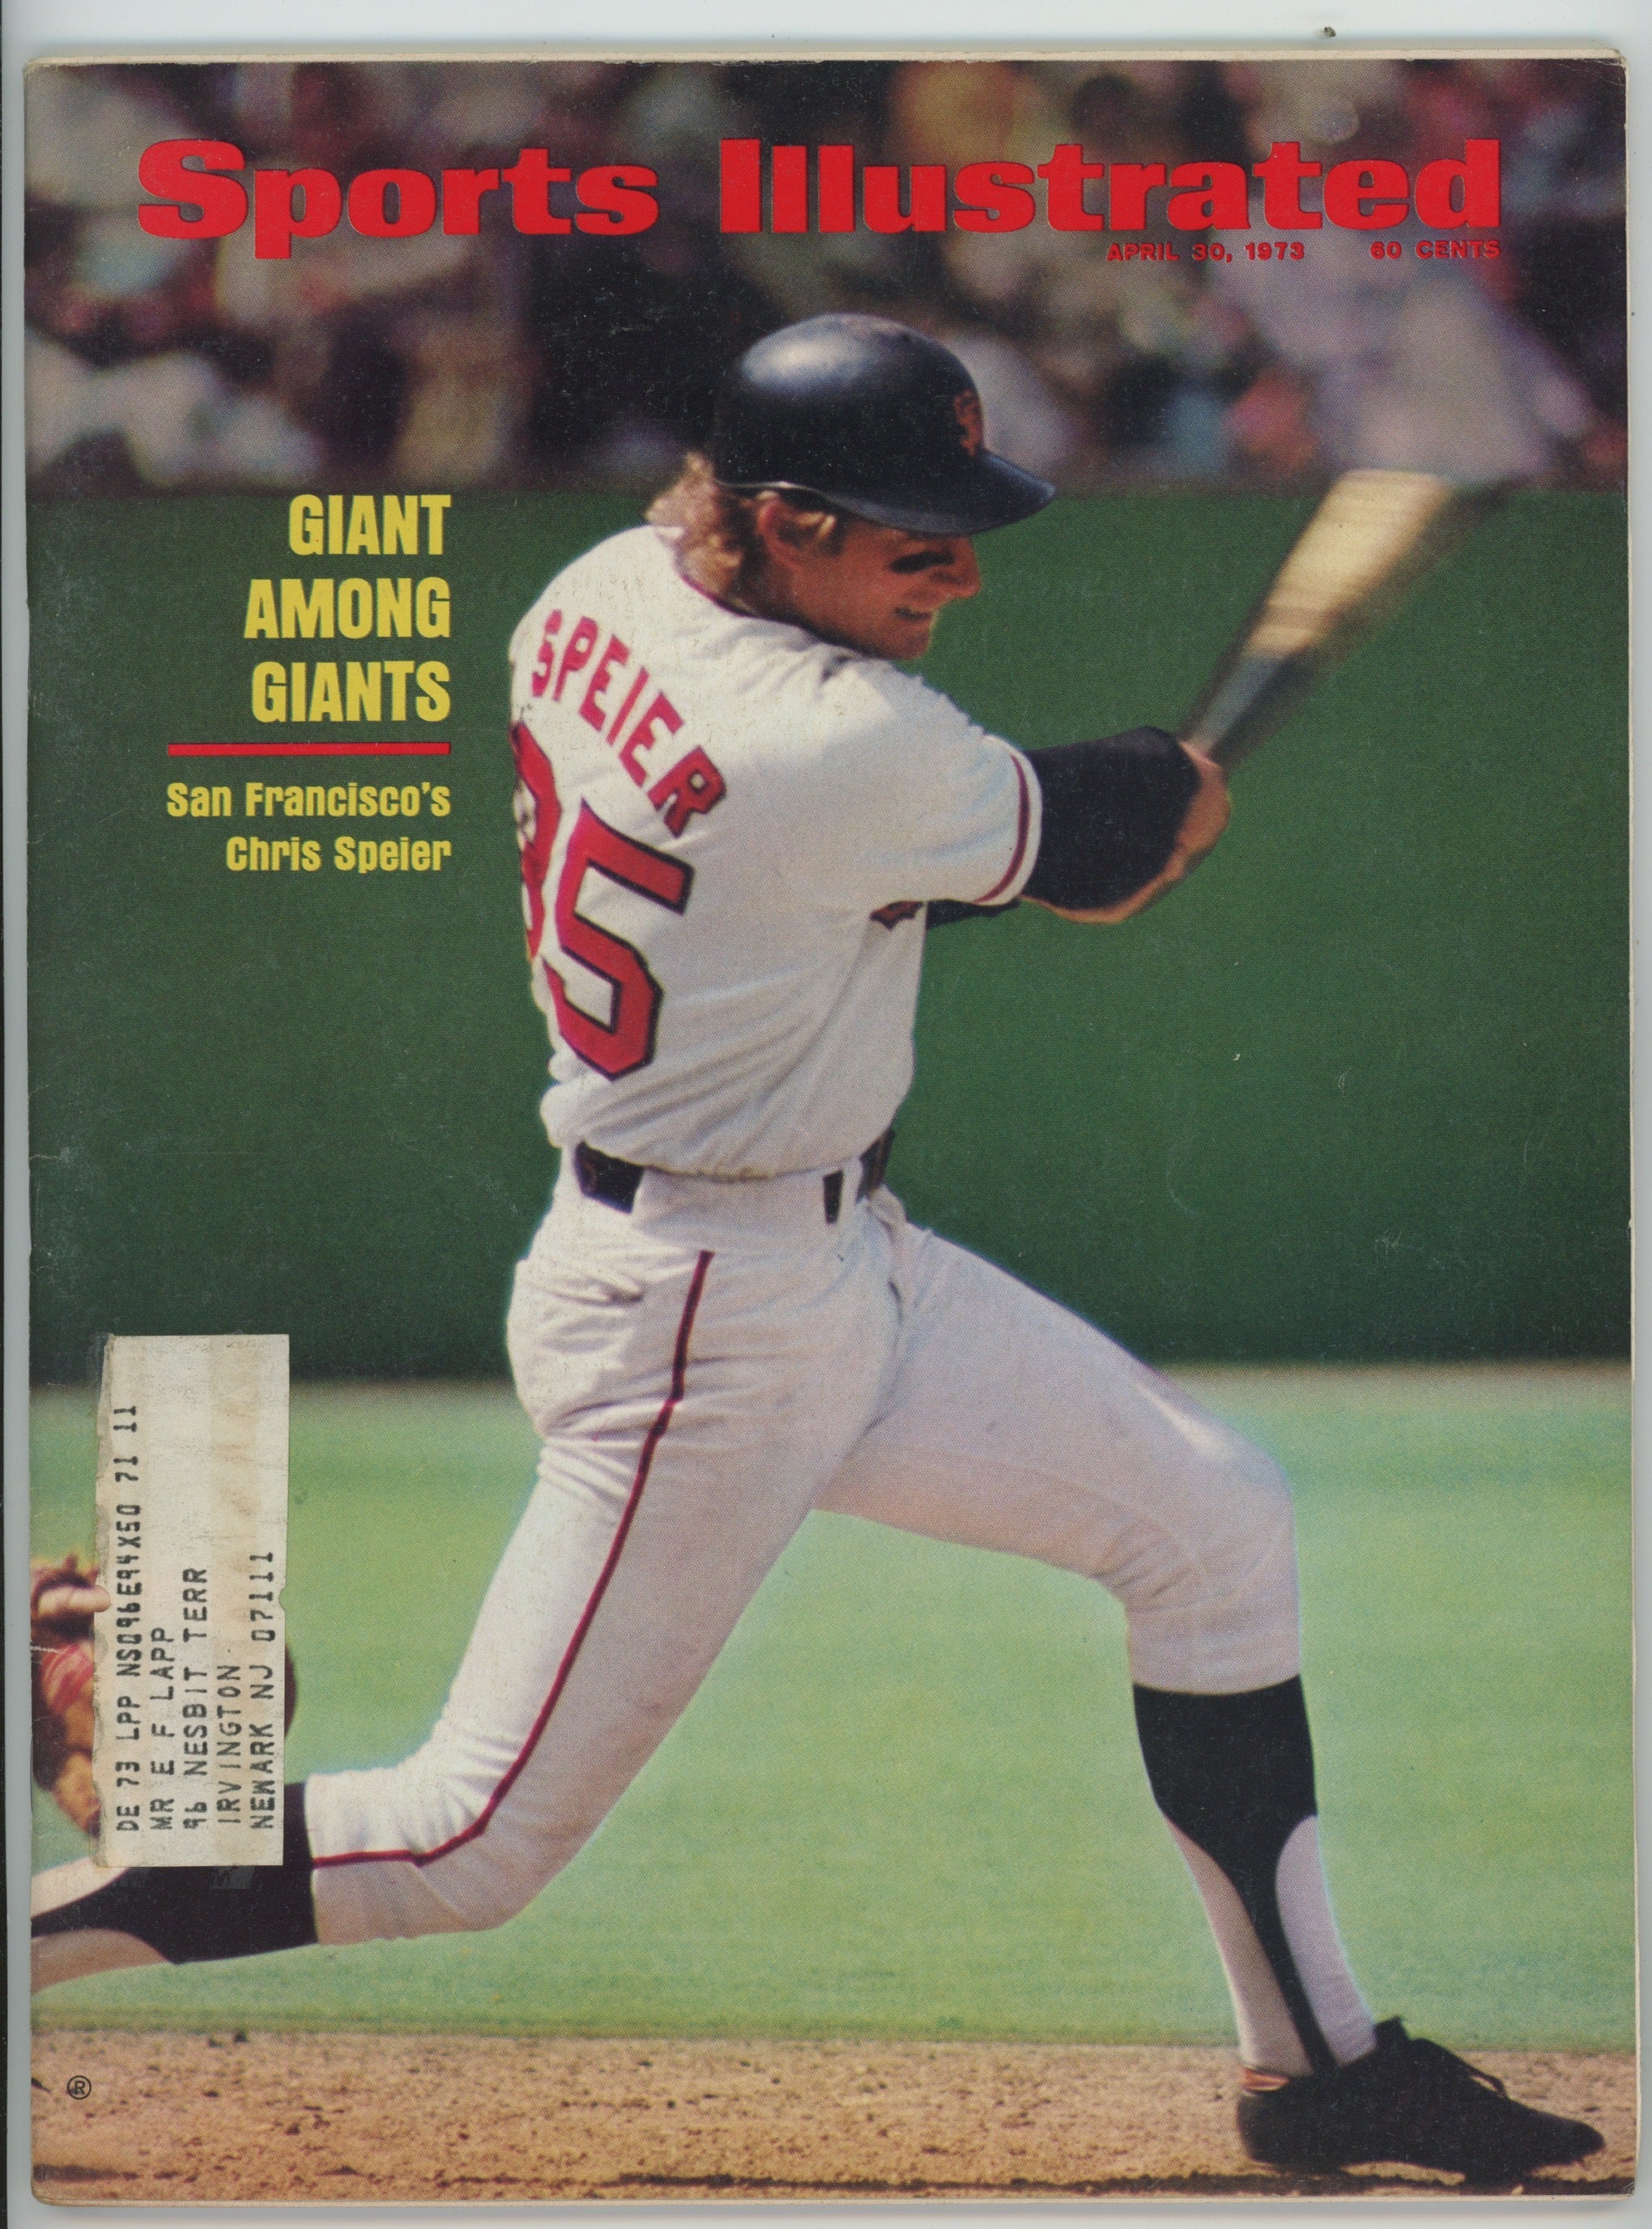 Chris Speier San Francisco Giants "Giant Among Giants" 4/30/73 Sports Illustrated ML